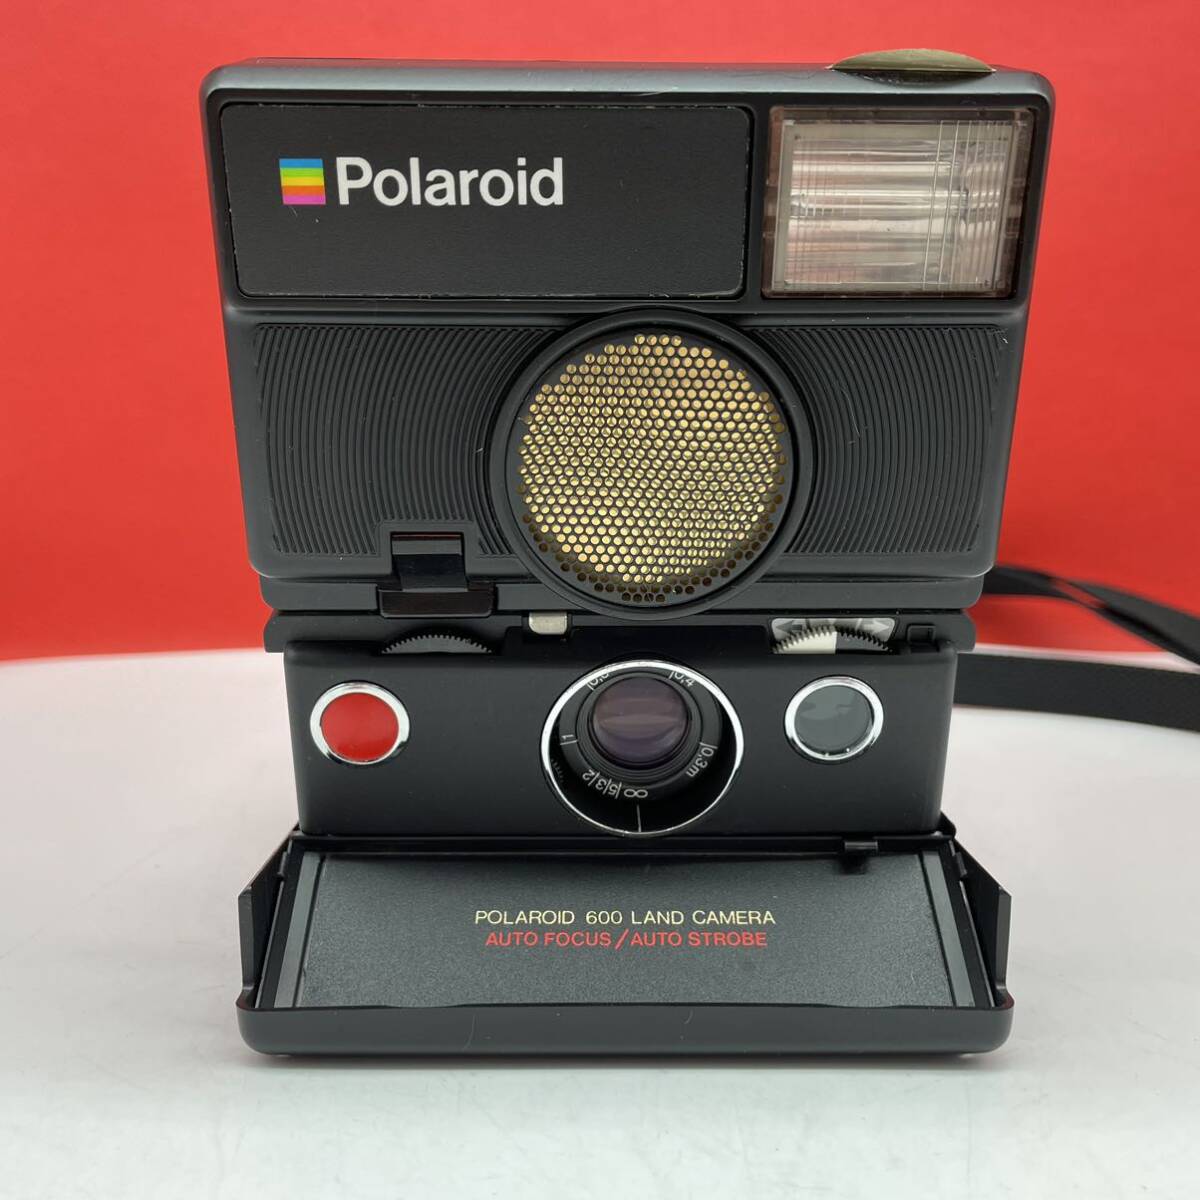 * POLAROID 600 LAND CAMERA AUTO FOCUS/AUTO STROBE instant camera Polaroid camera operation not yet verification Polaroid 